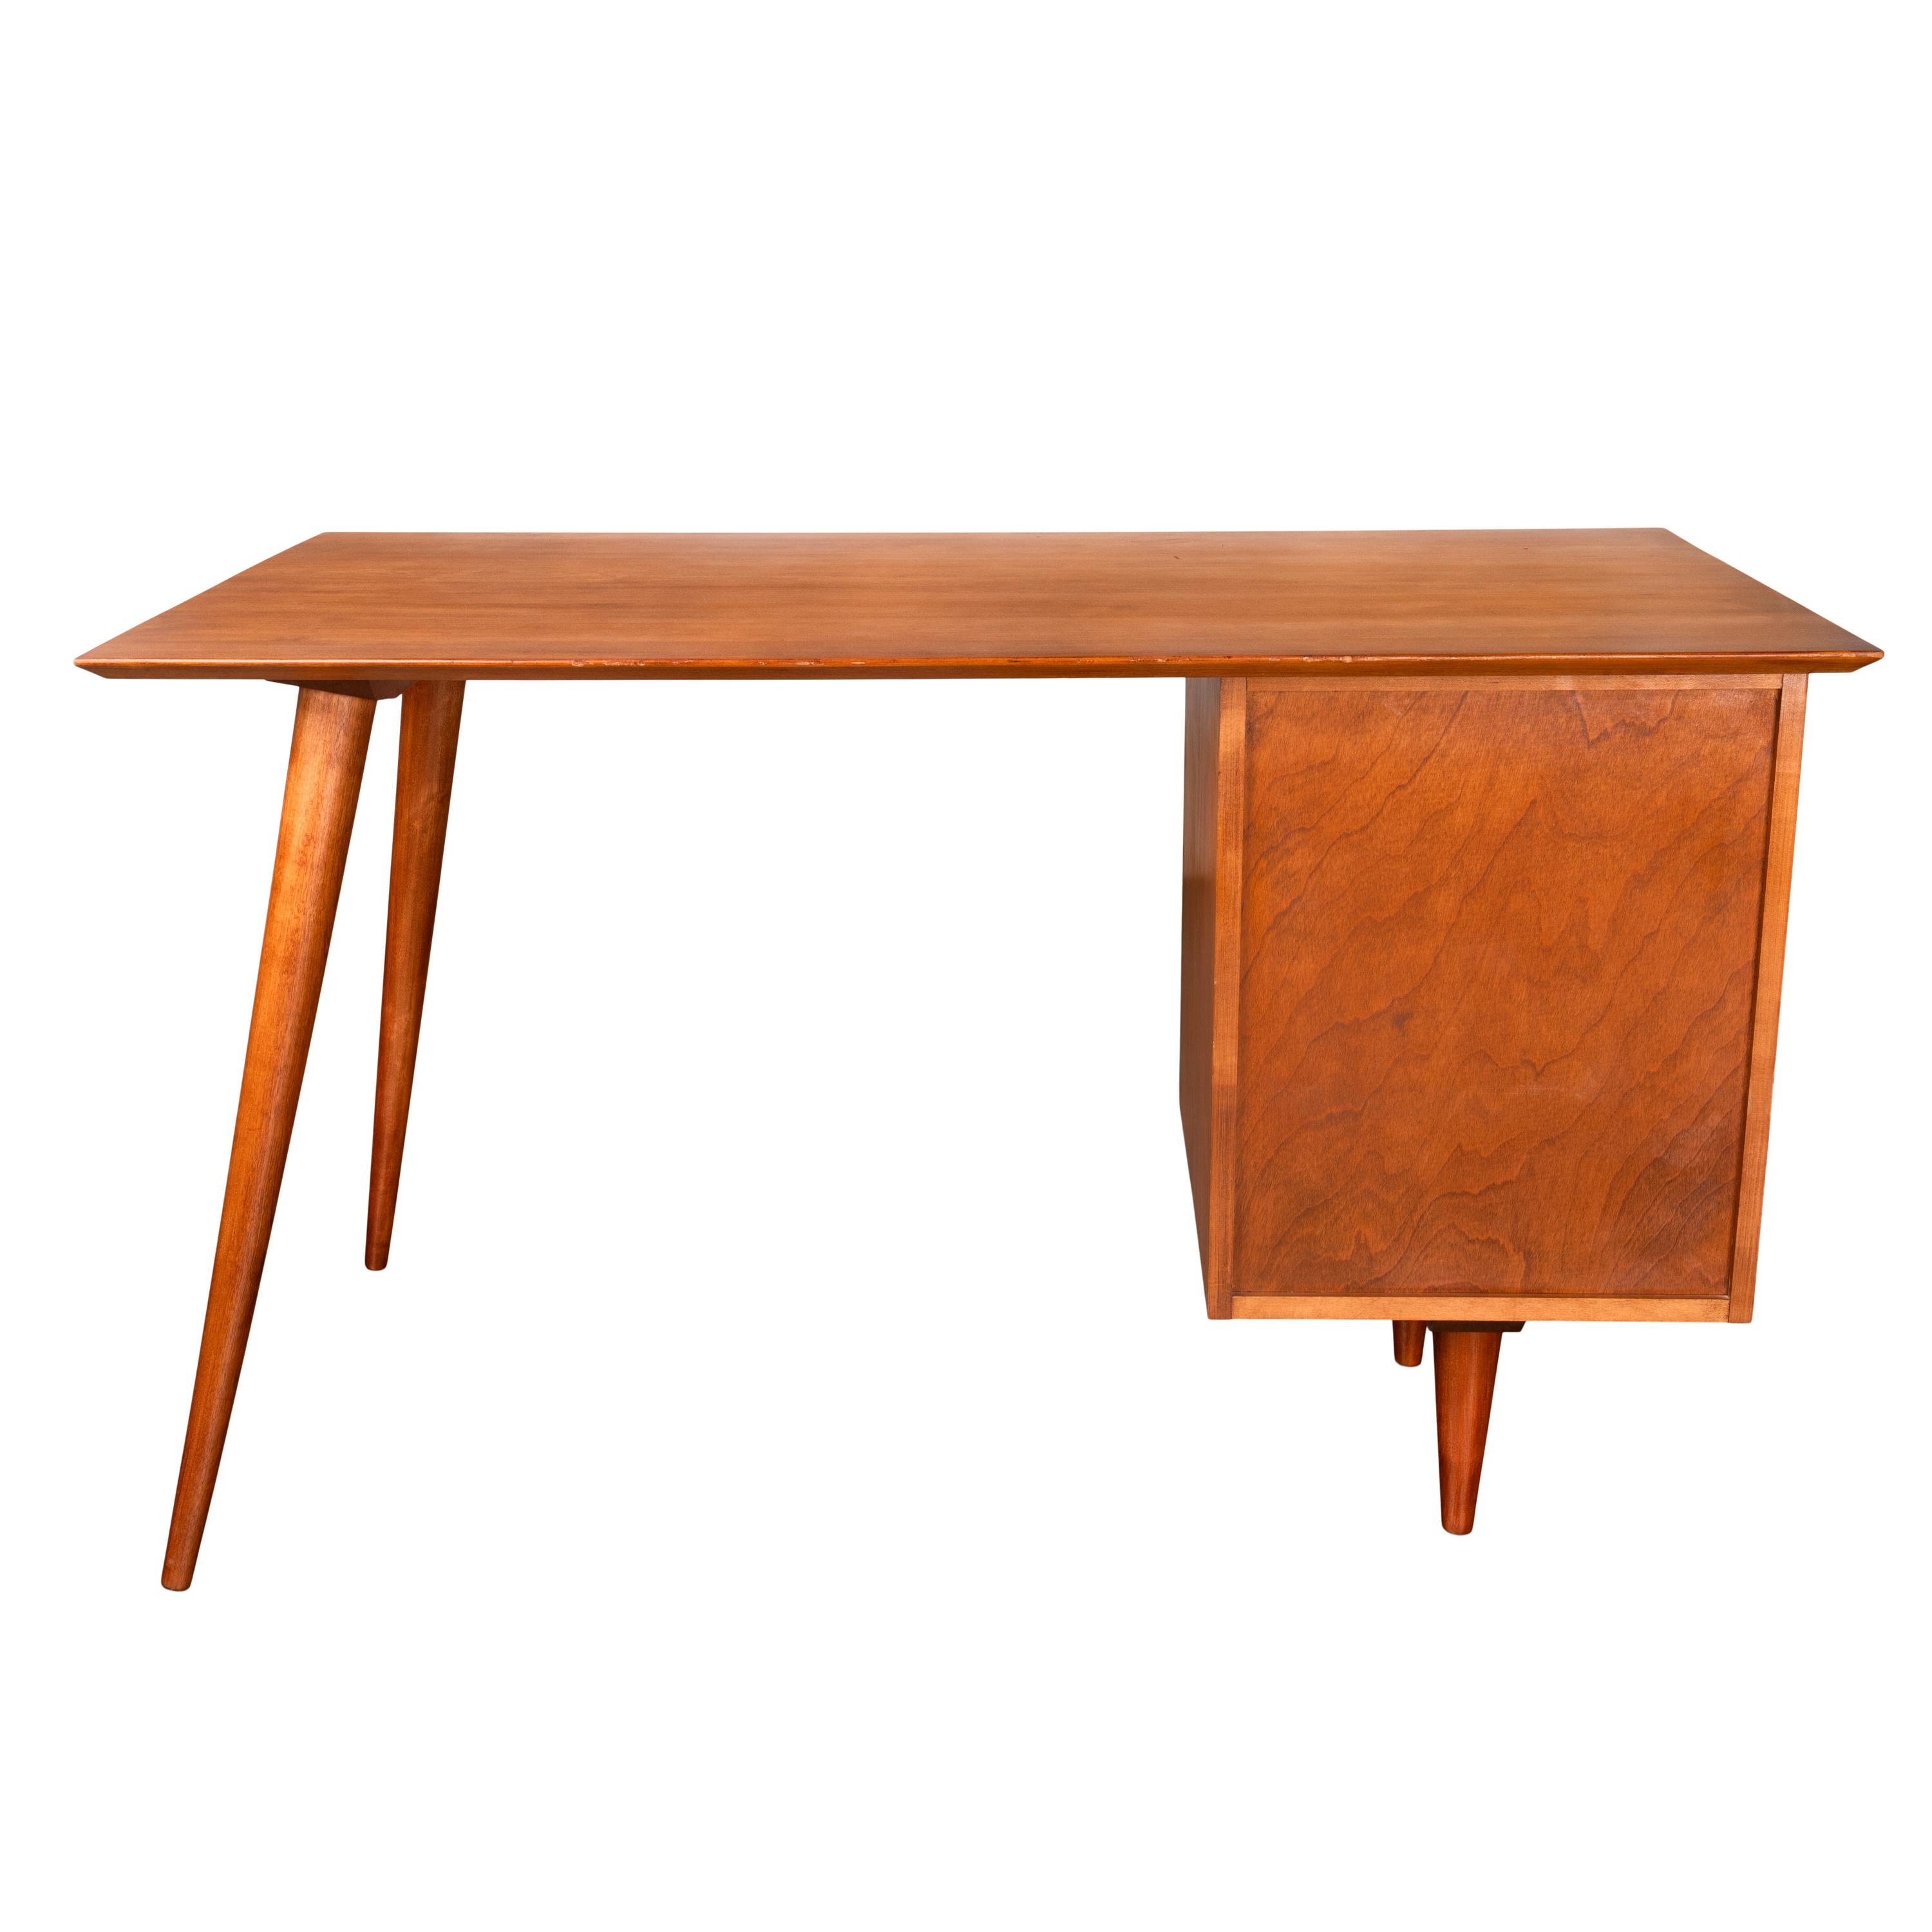 American Mid Century Modern Paul McCobb Planner Group Maple # 1560 Desk 1950's For Sale 6